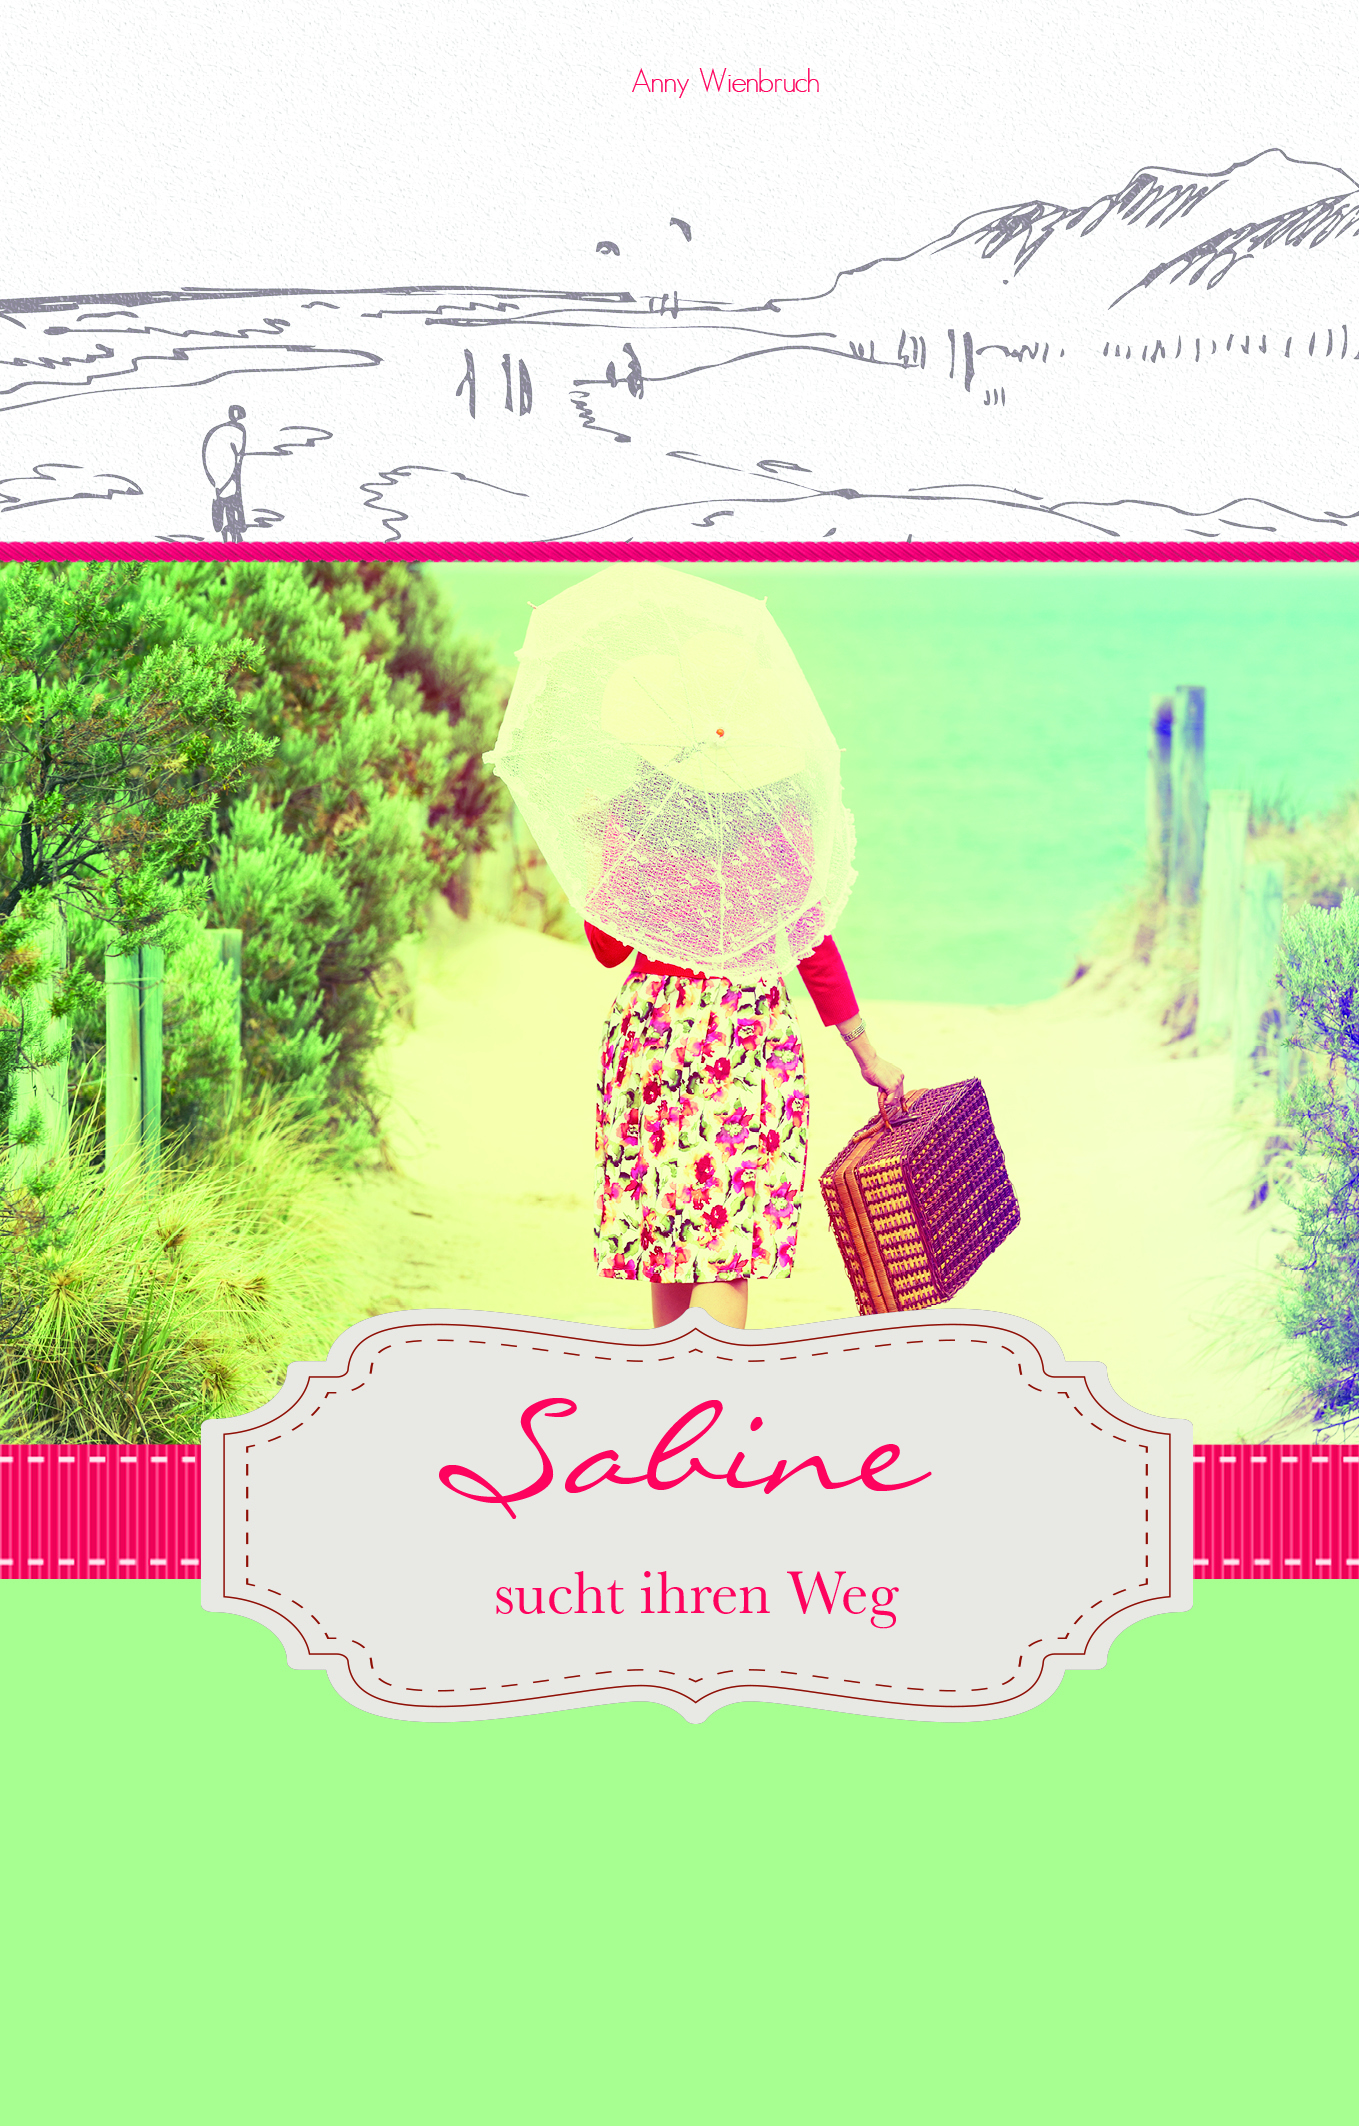 Sabine sucht ihren Weg